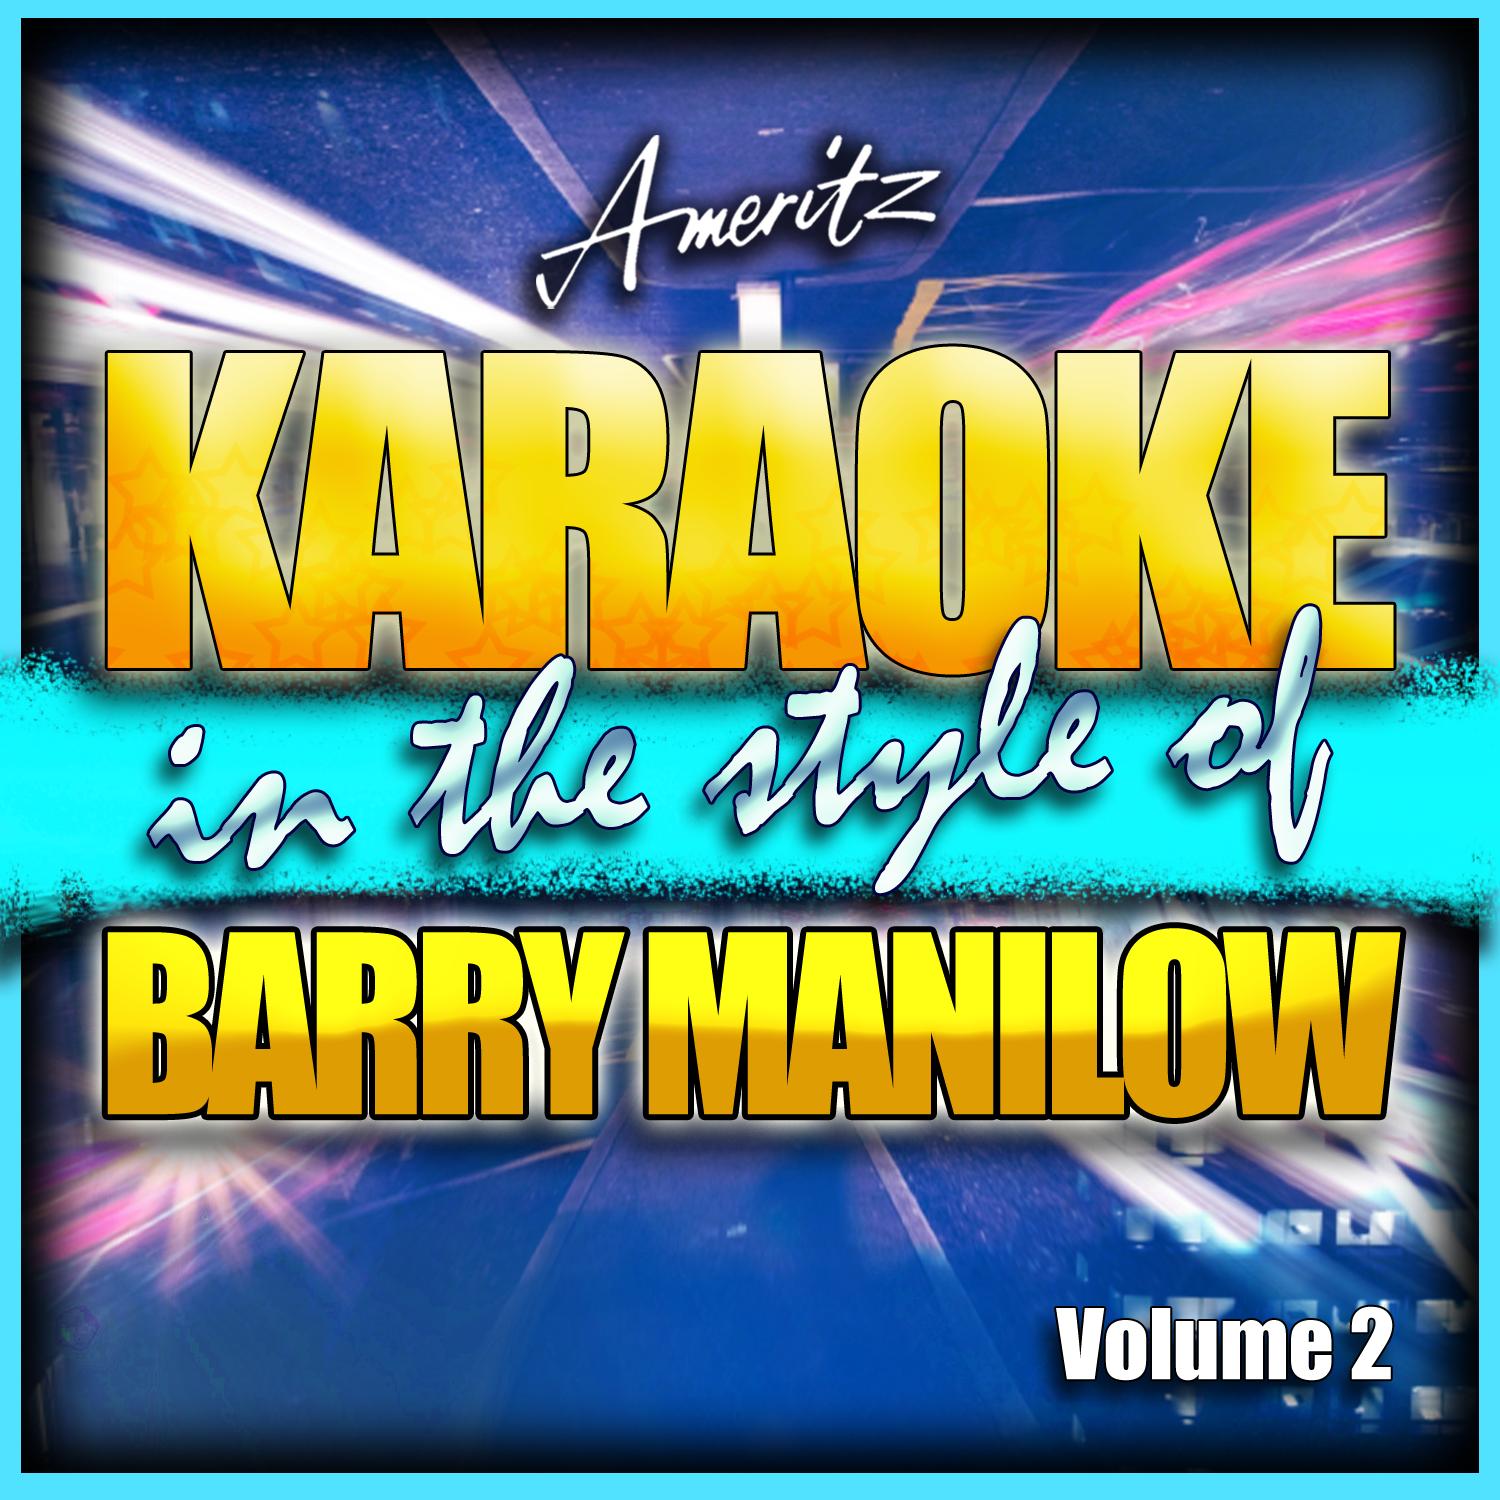 Karaoke - Barry Manilow Vol. 2